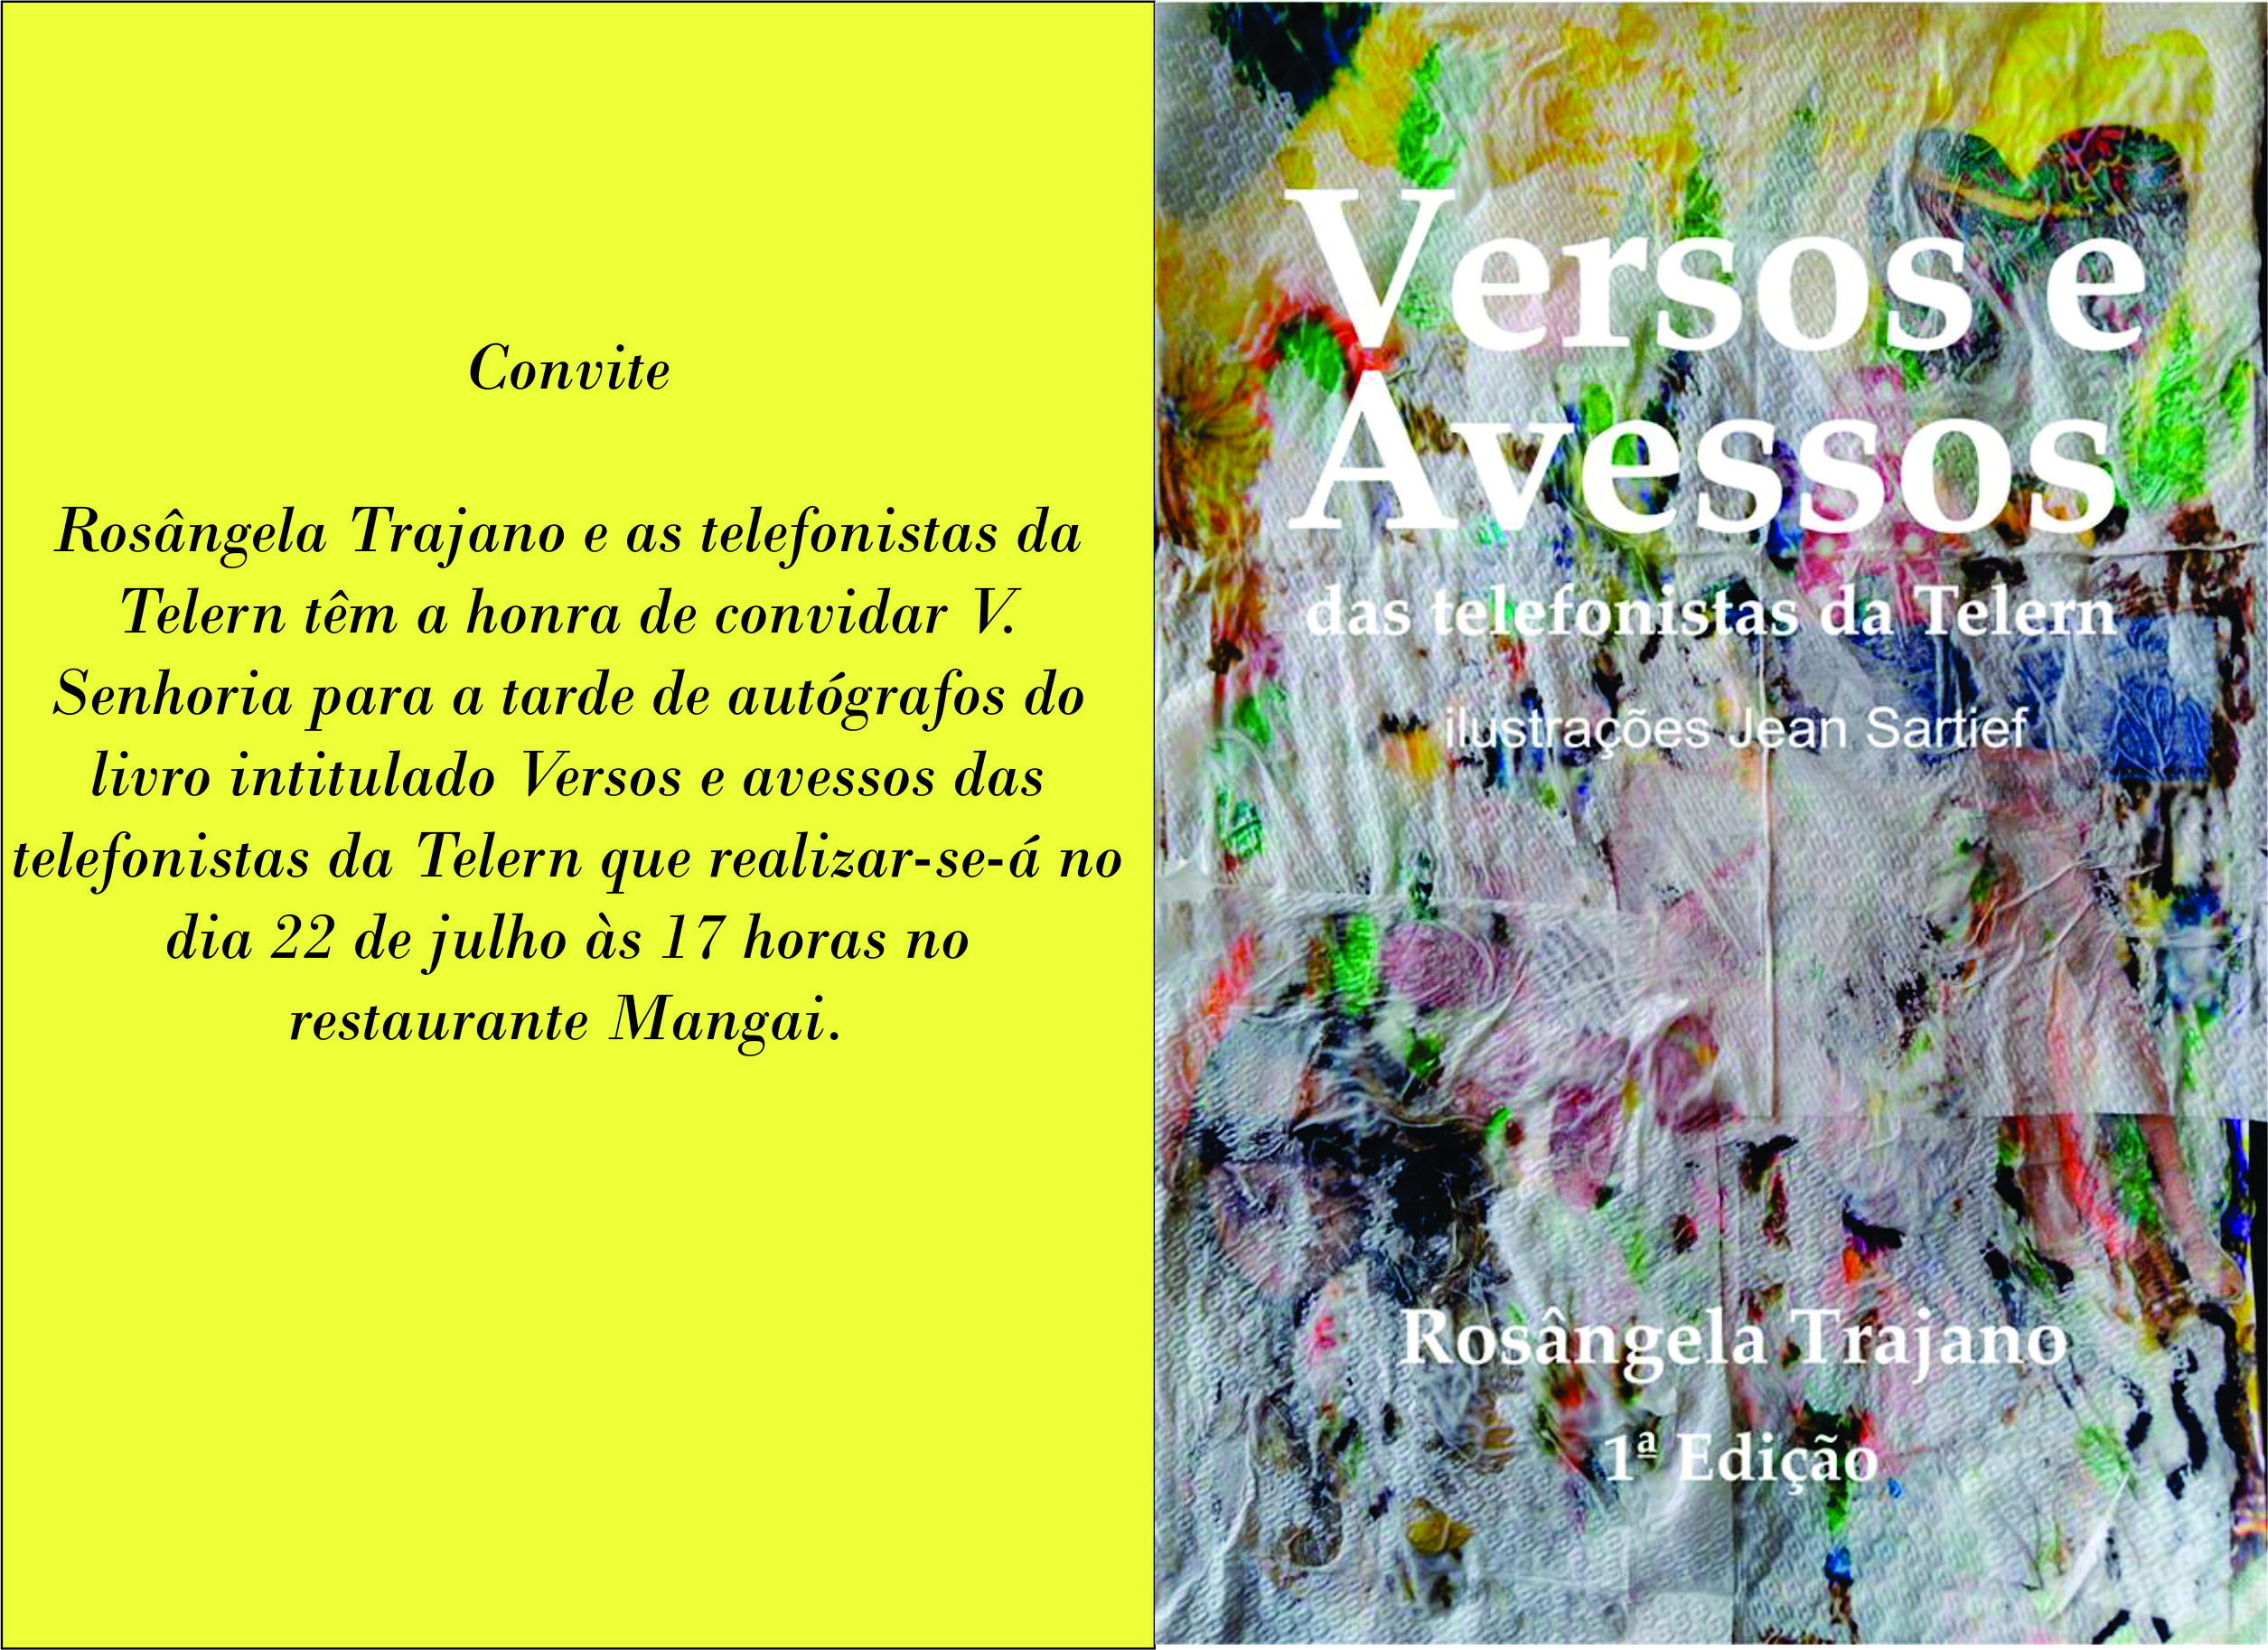 Vendas do livro "Versos e Avessos" será revertida para o Varela Santiago